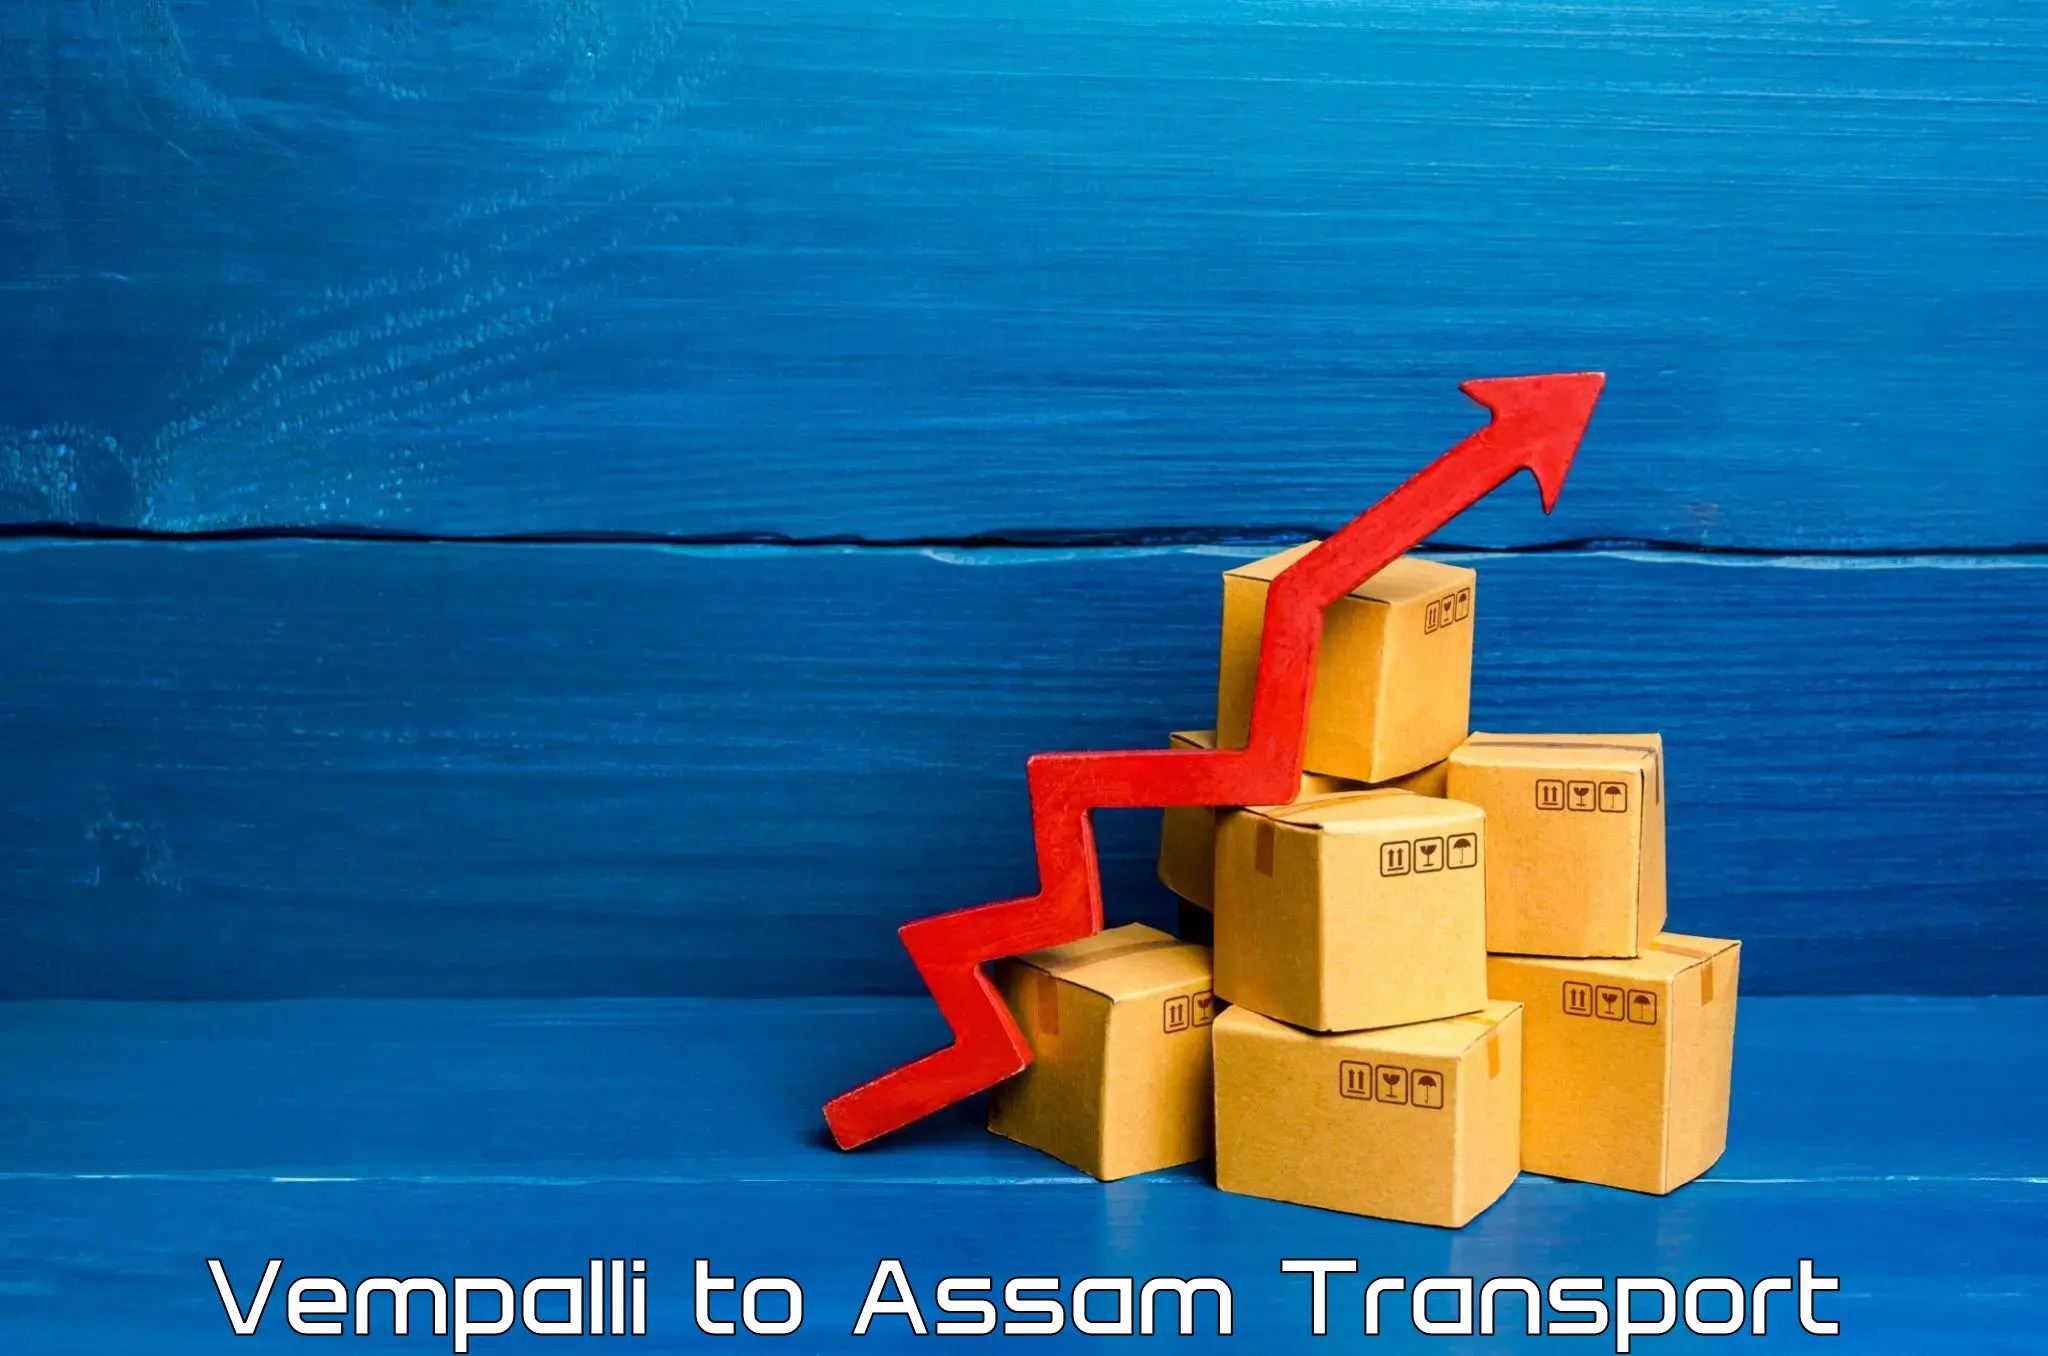 Daily transport service Vempalli to Assam